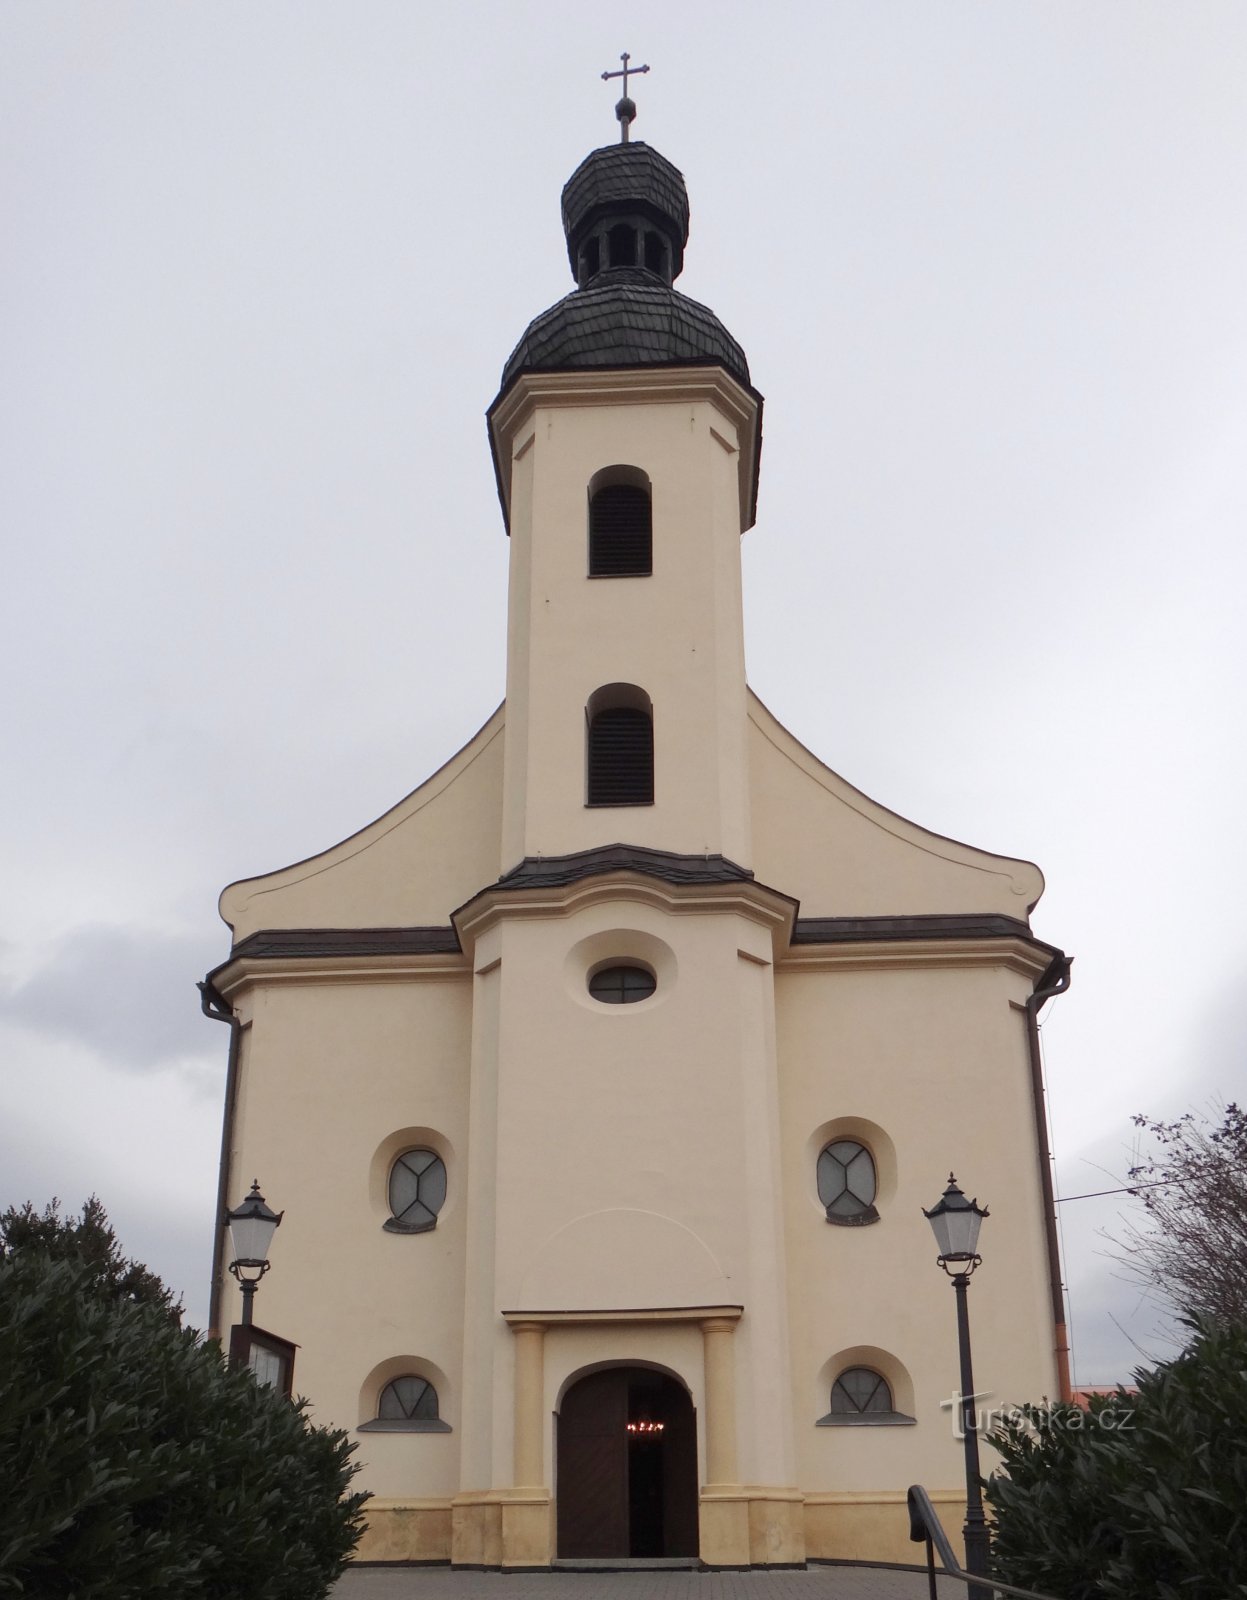 Hlúčín - nhà thờ St. Thị trường